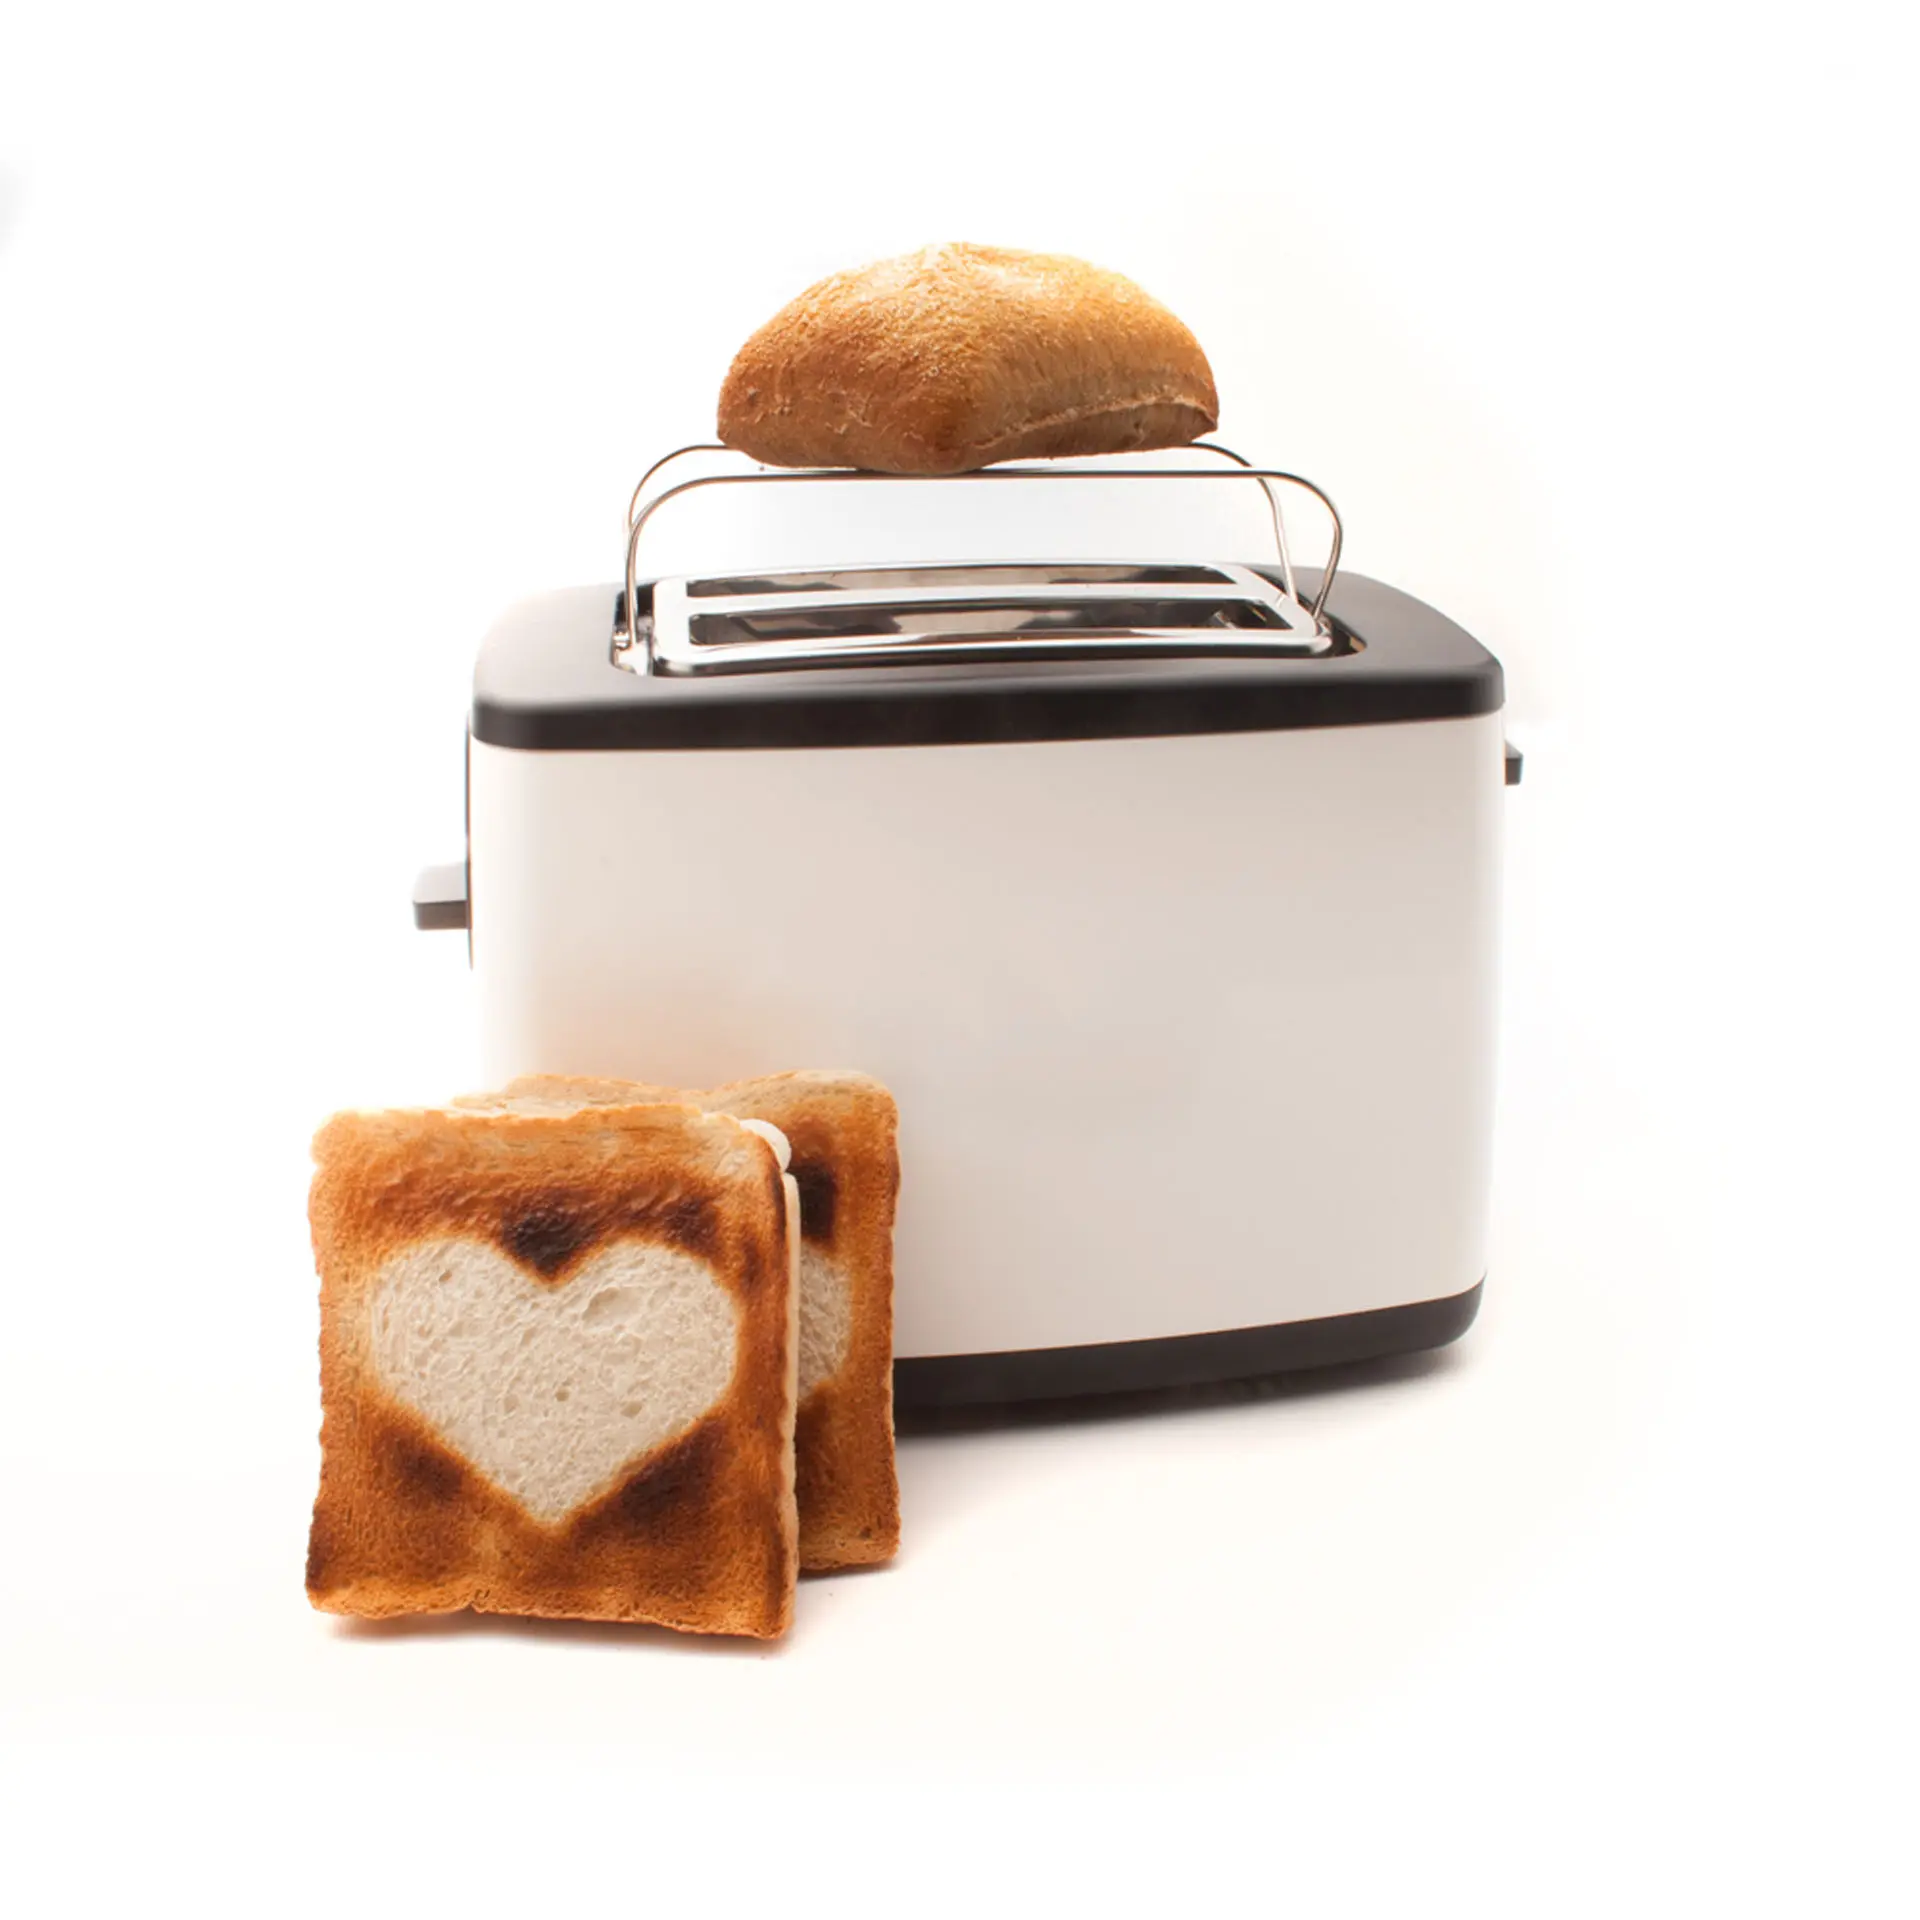 logo toaster plus - toaster bedruckt - toaster mit logo